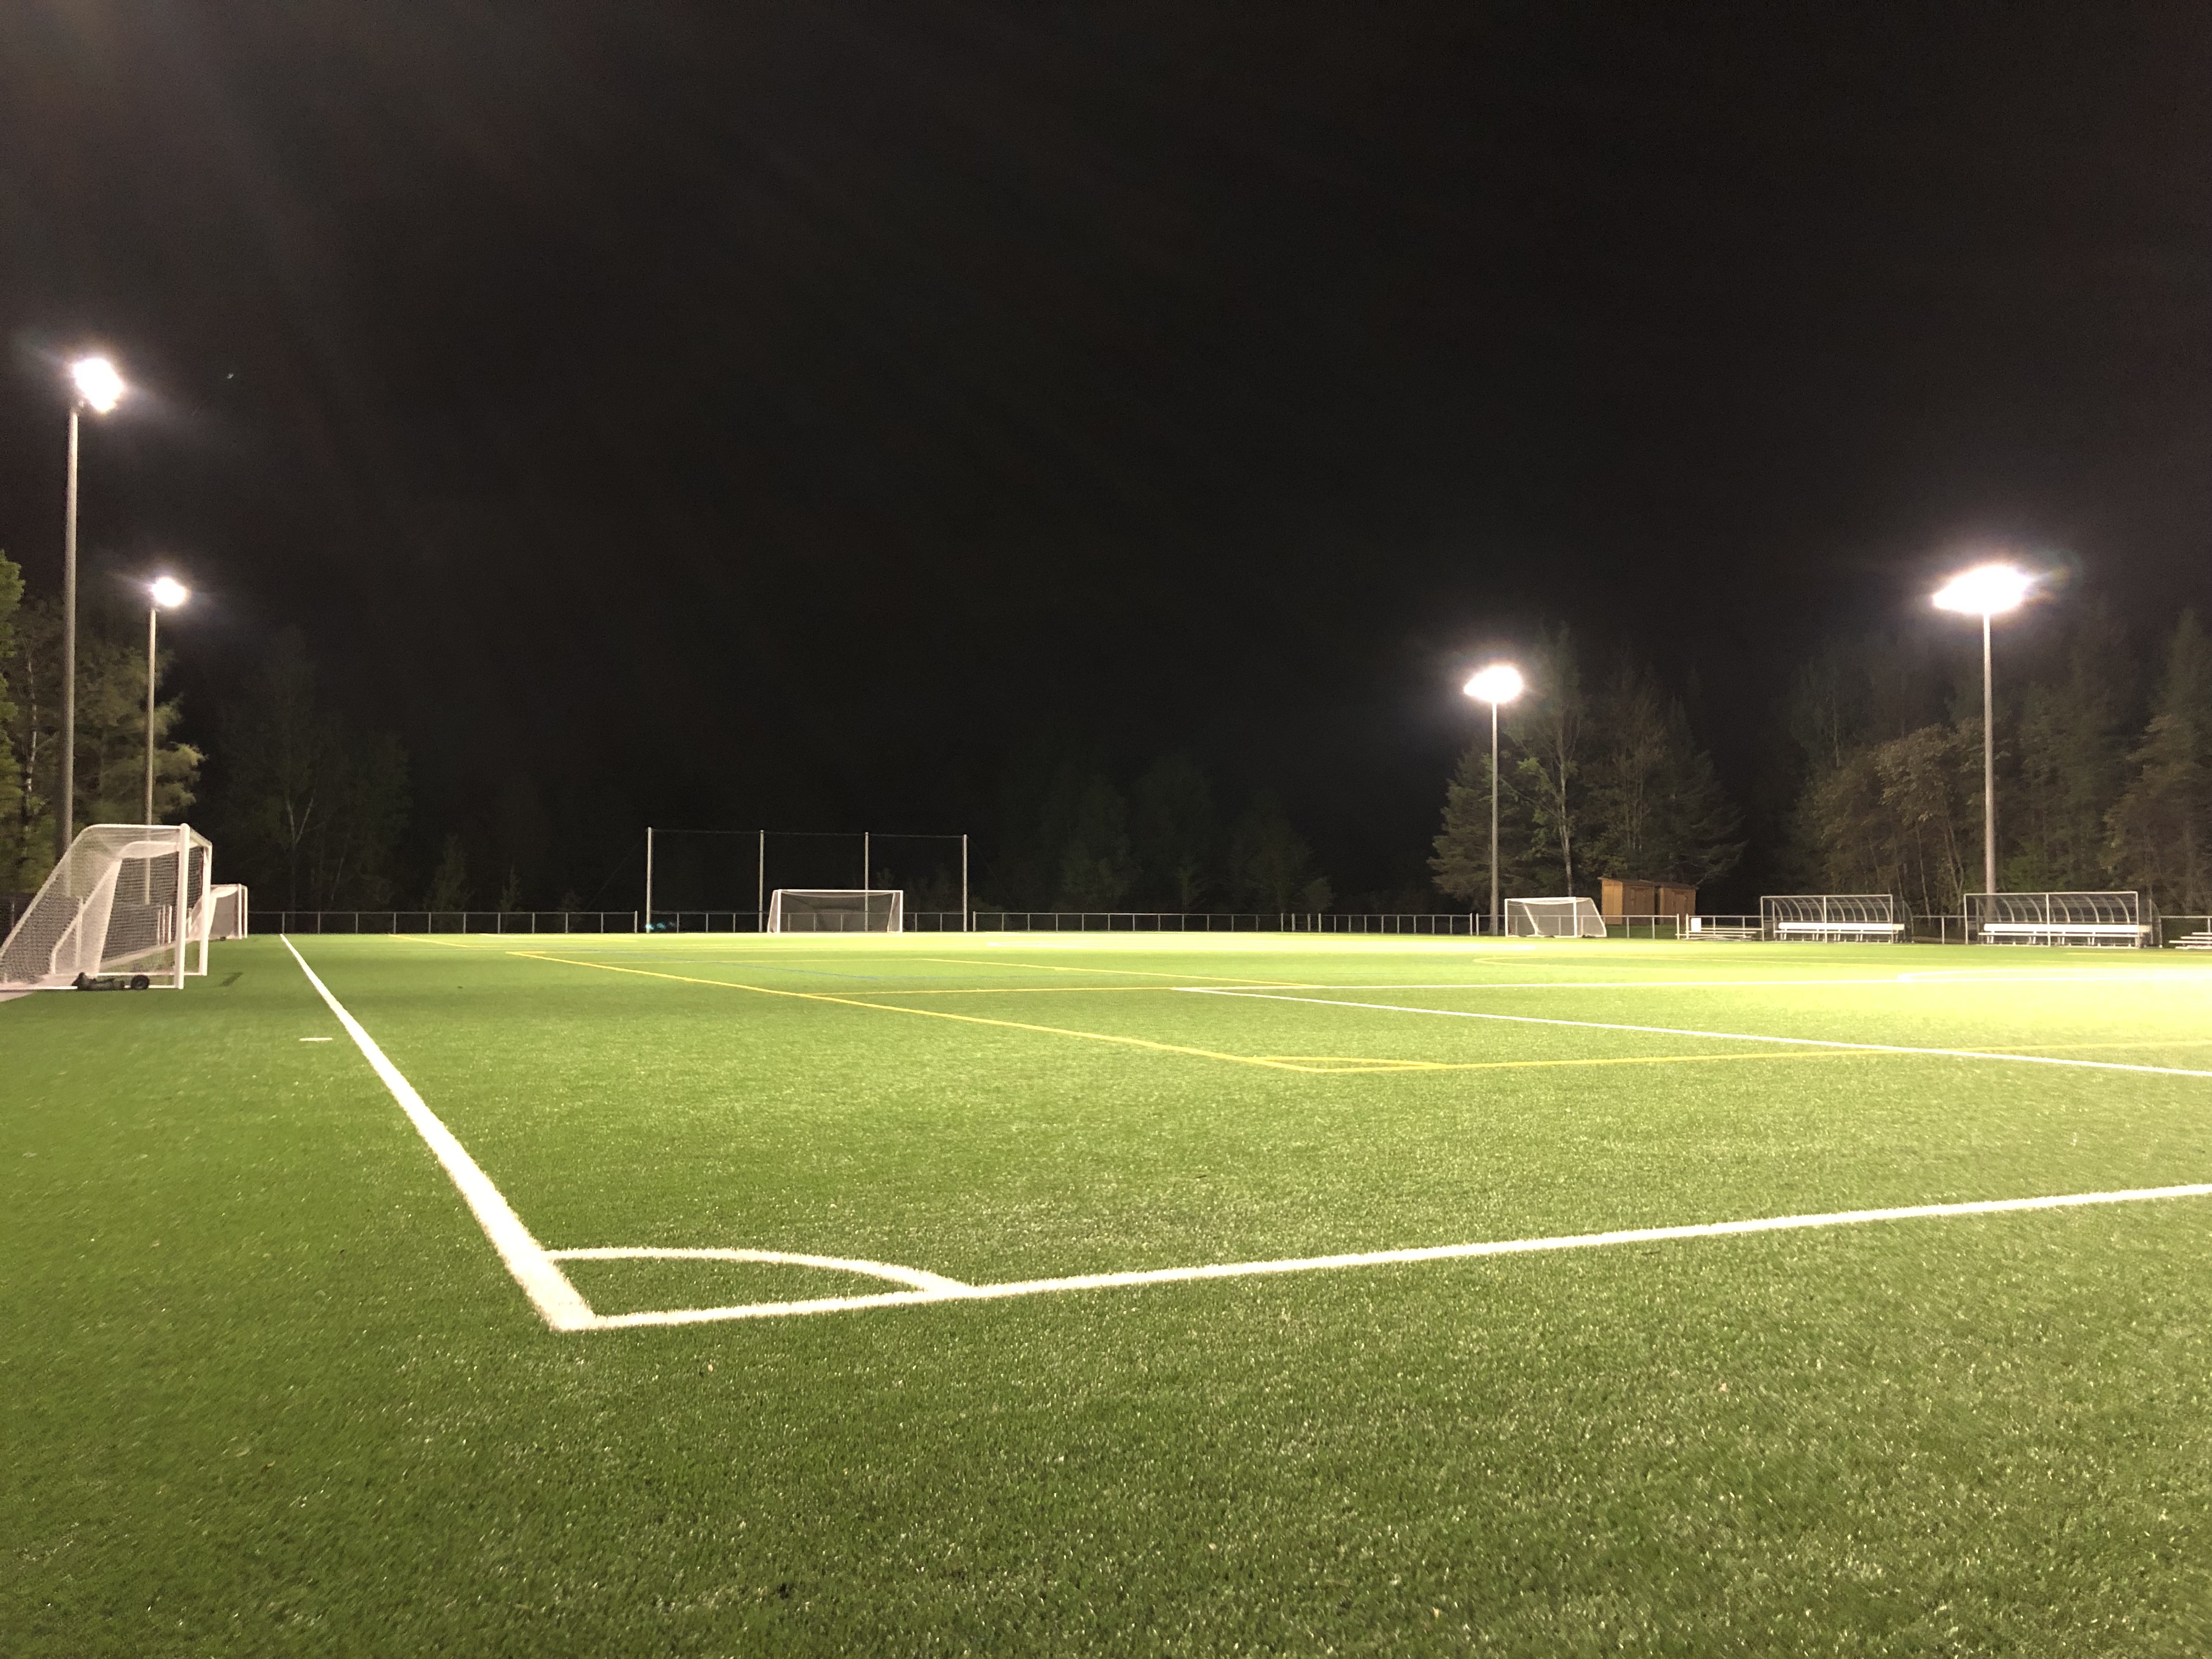 Terrain de soccer / multifonctionnel de dernière génération - Éclairage de nuit